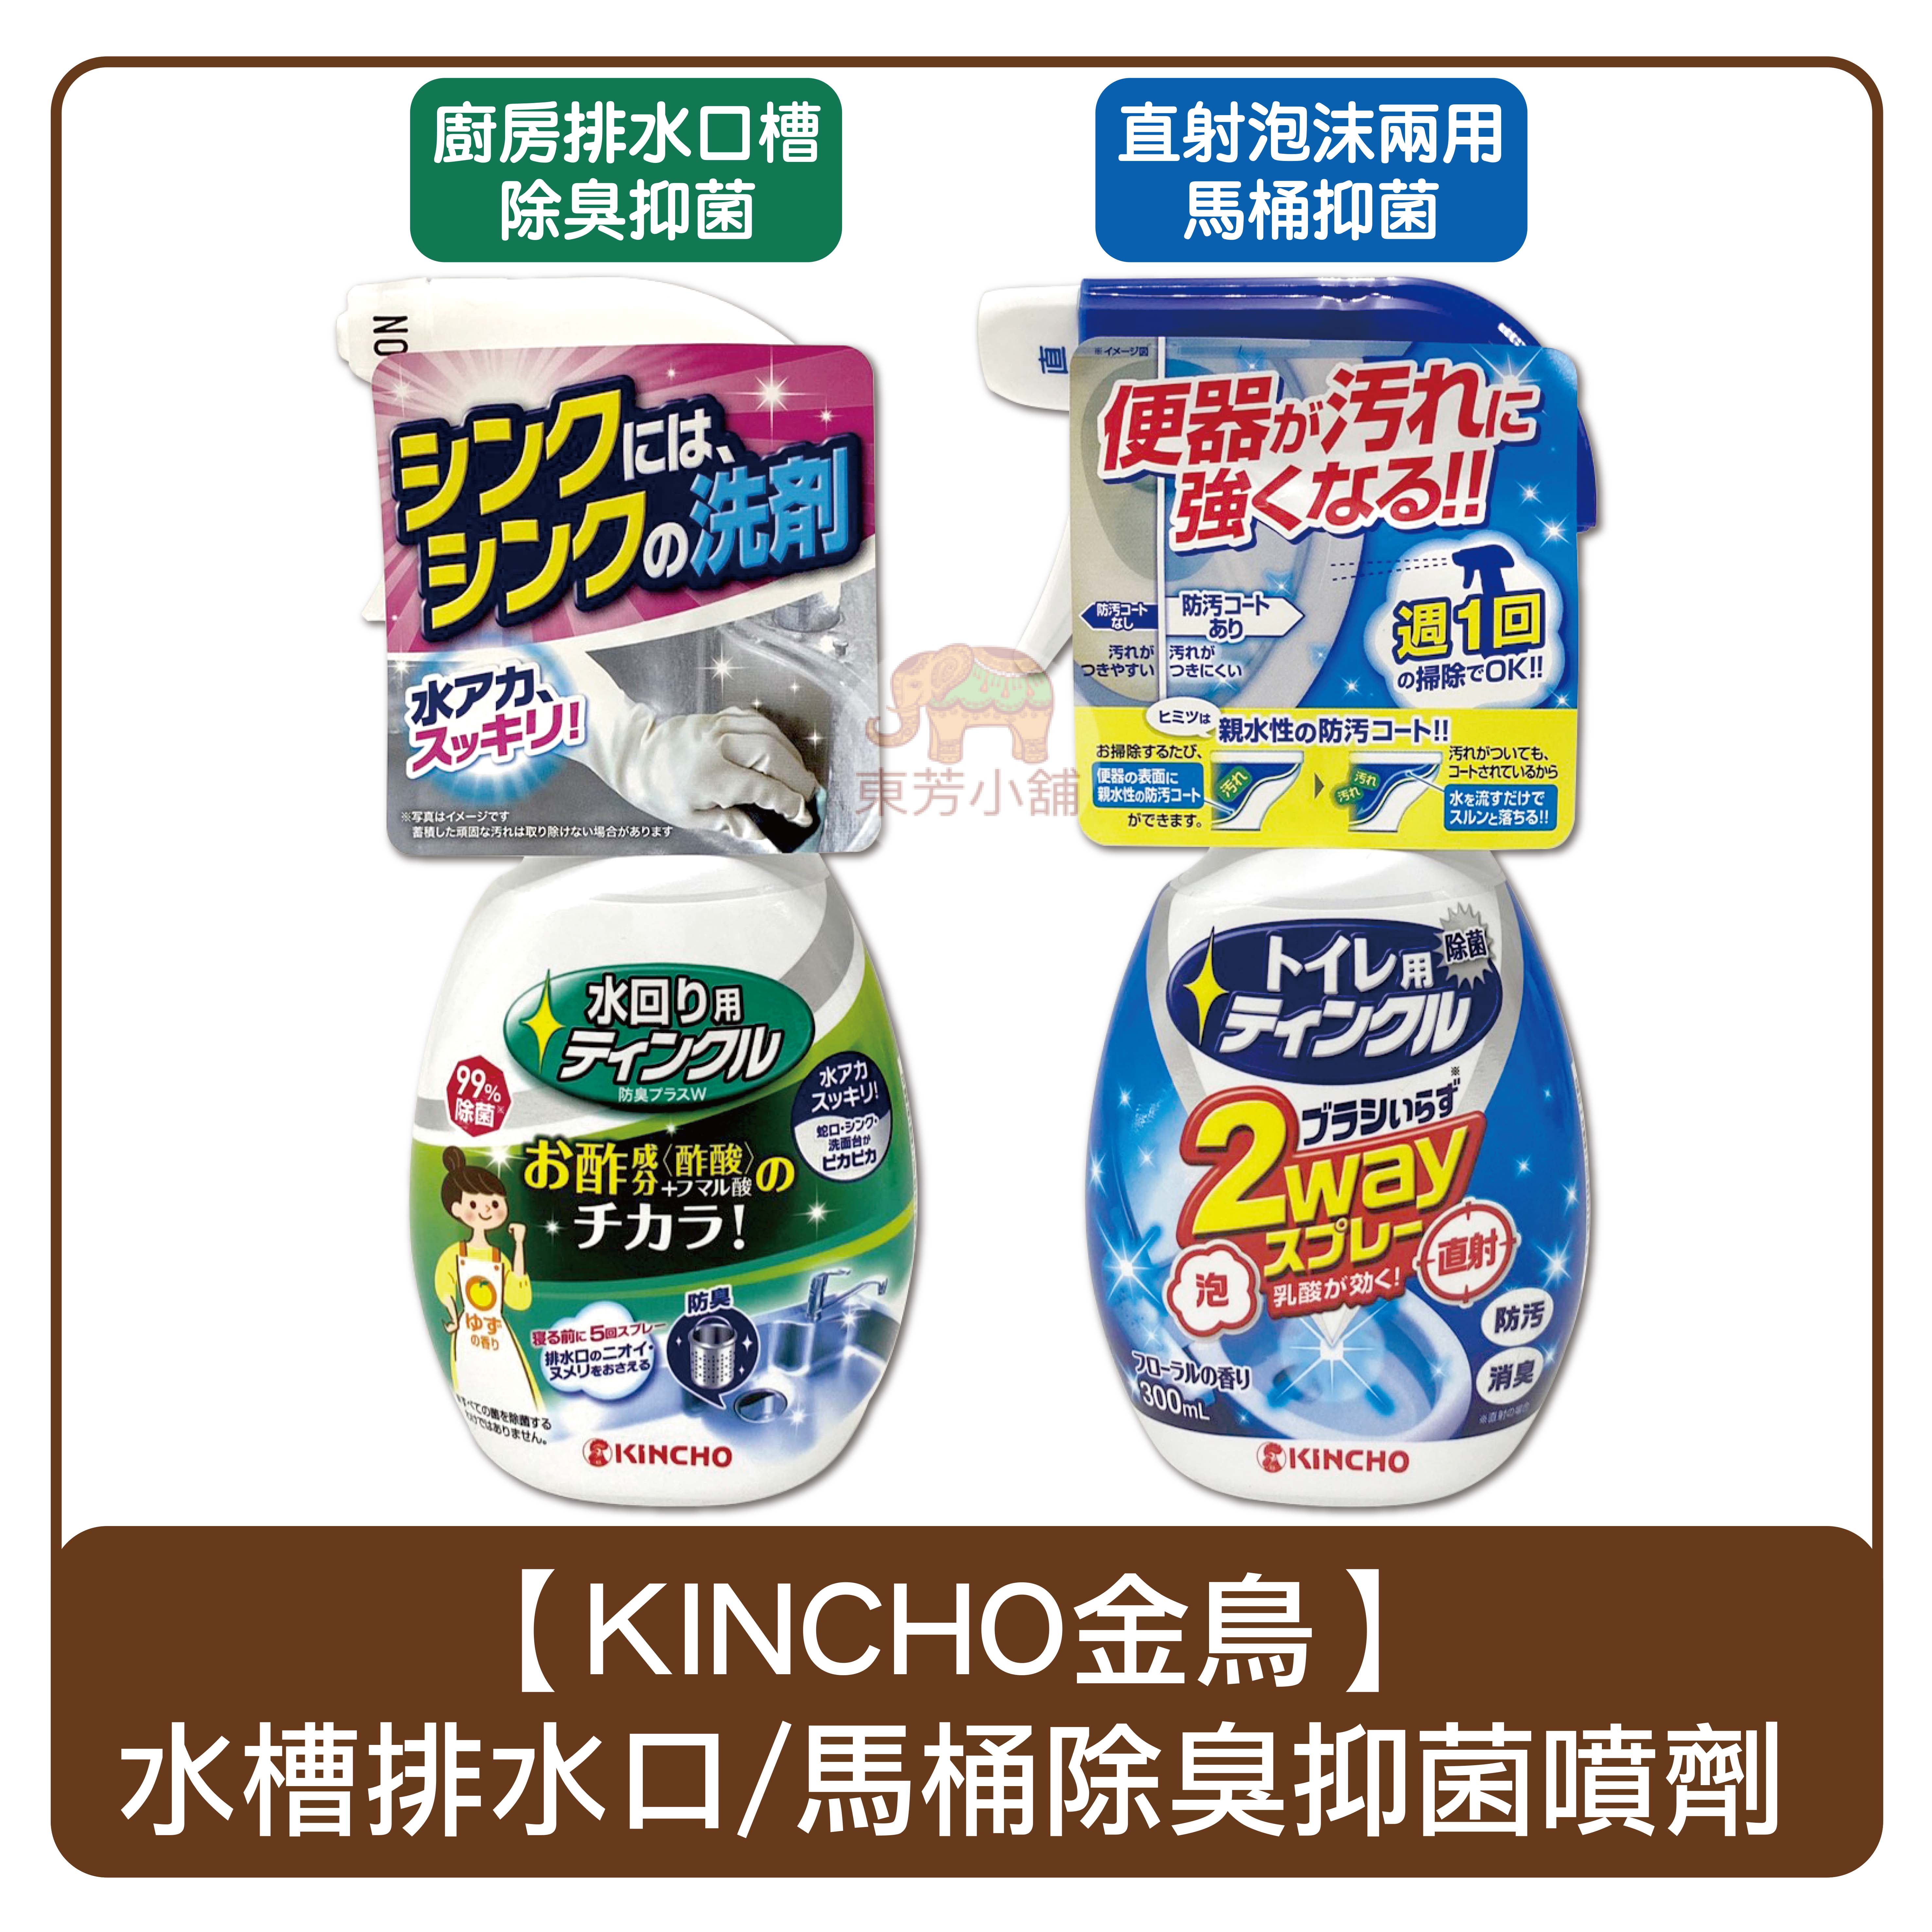 日本 KINCHO金鳥 廚房水槽排水口除臭／直射泡沫兩用馬桶 抑菌清潔劑 300g 噴劑 2way